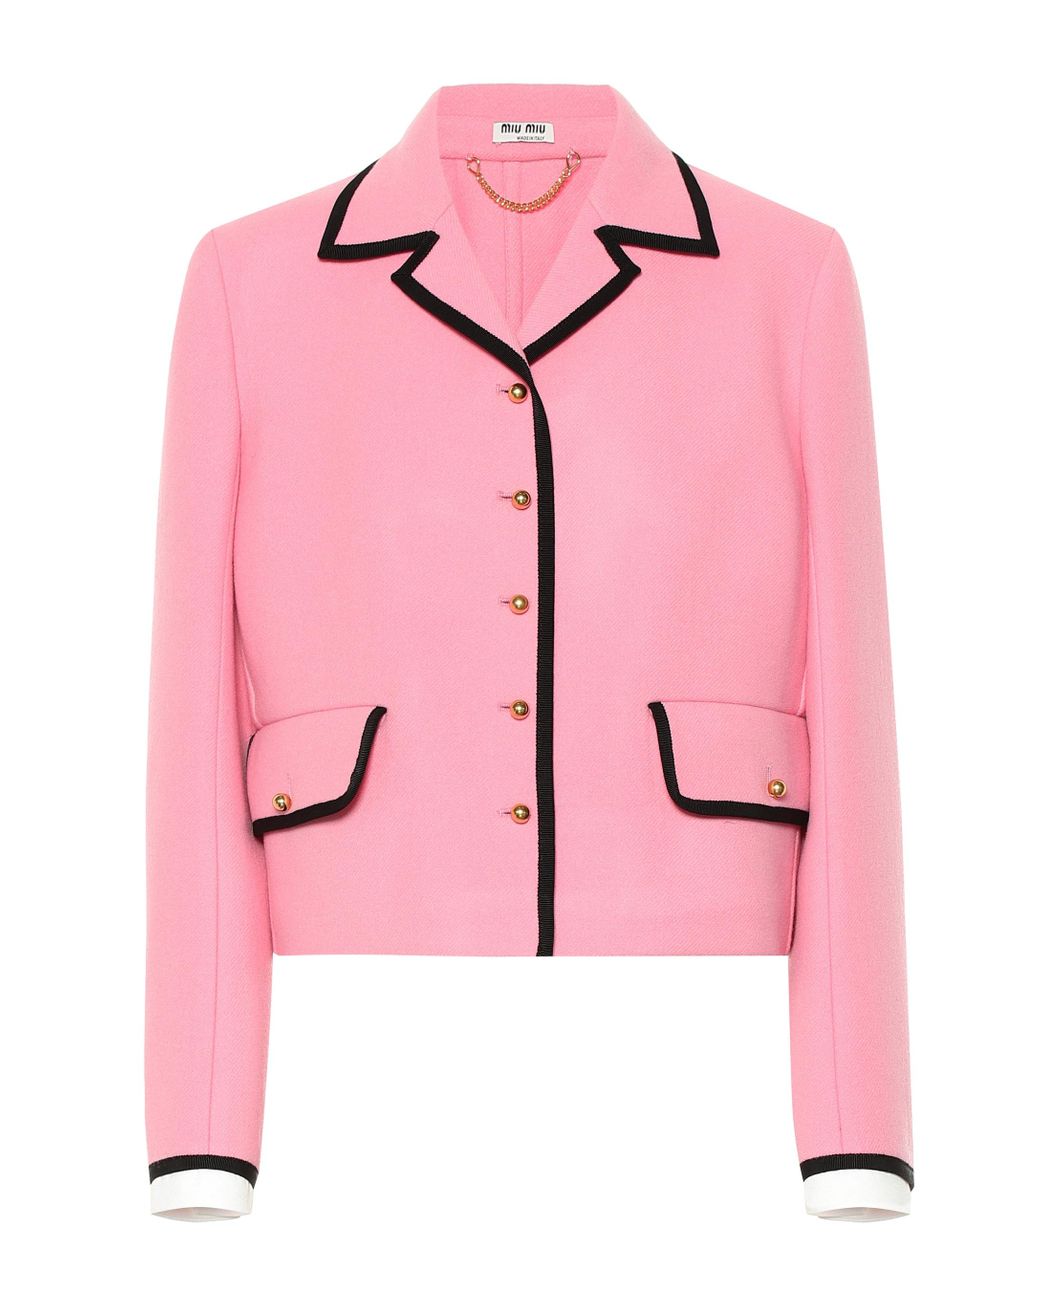 Miu Miu Wool Jacket in Pink - Lyst